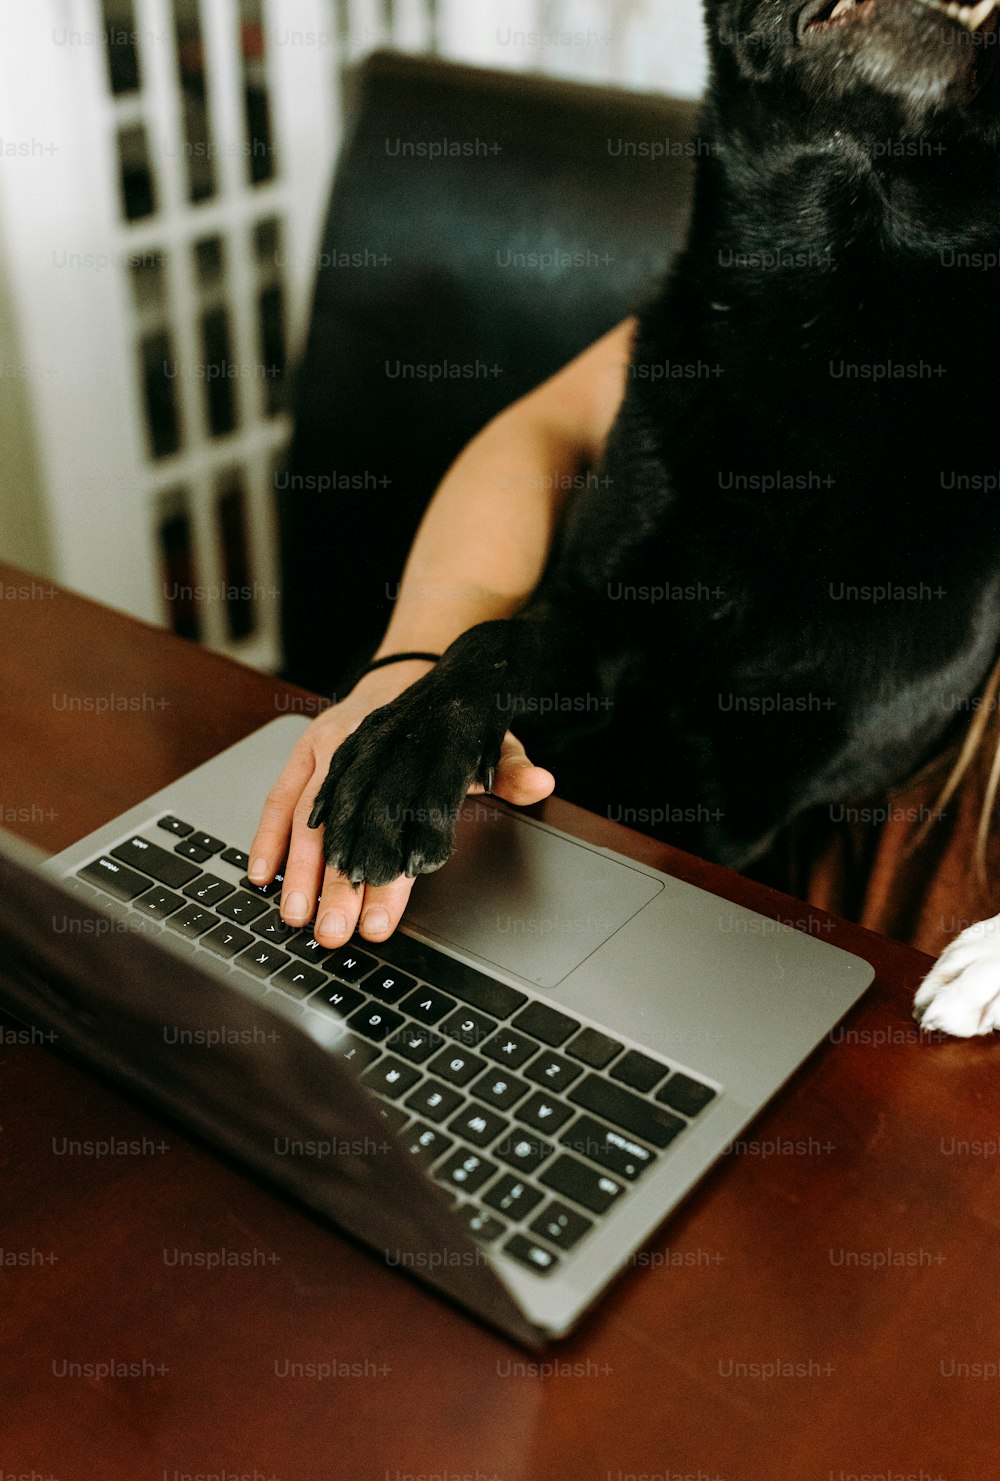 Una persona con un perro en su regazo usando una computadora portátil